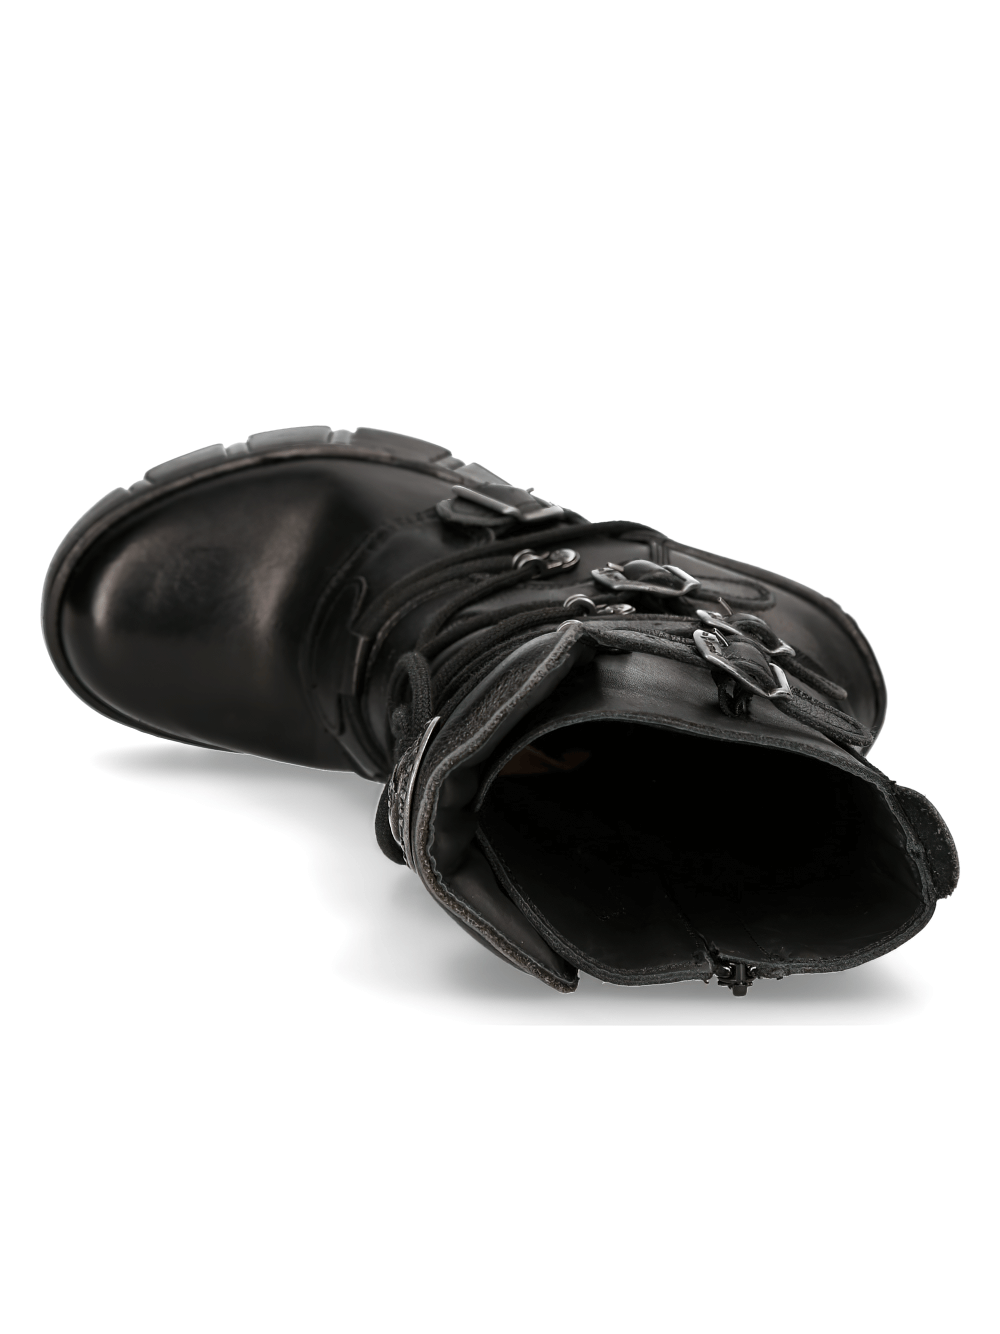 NEW ROCK – Edgy schwarze Stiefeletten mit Schnallendetail und Schnürung